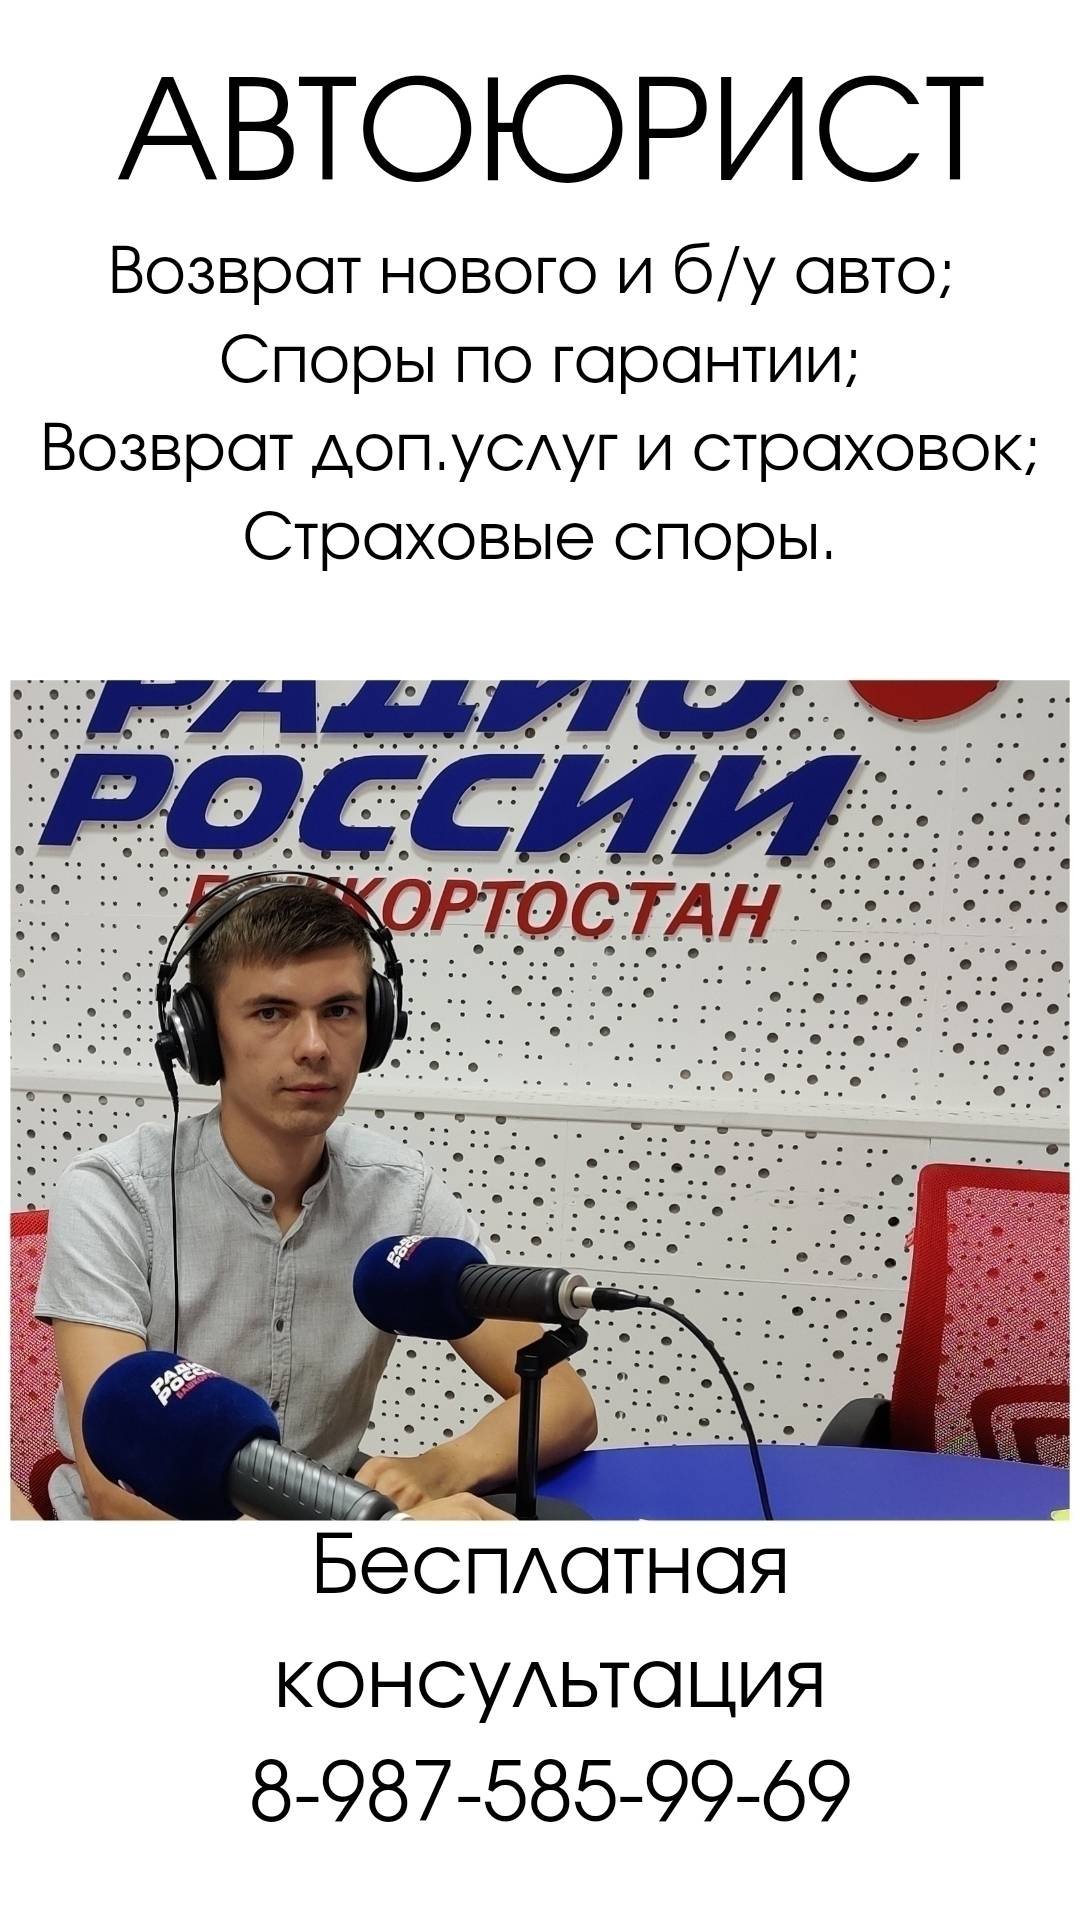 "Меньшиков Максим Сергеевич"